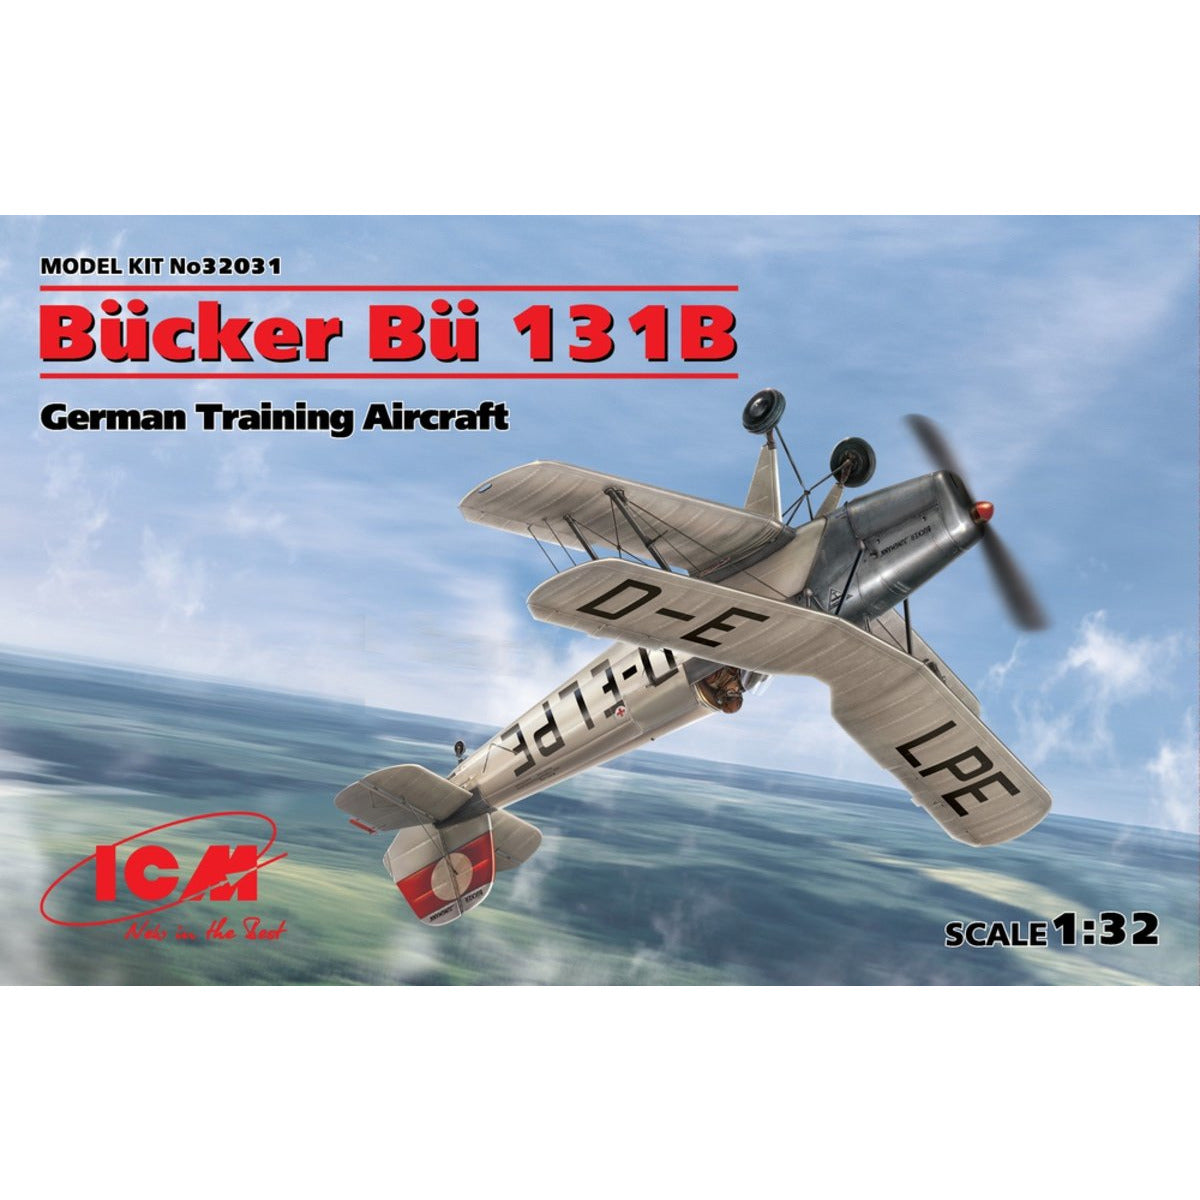 Bucker Bu 131B German Training Aircraft 1/32 #32031 by ICM